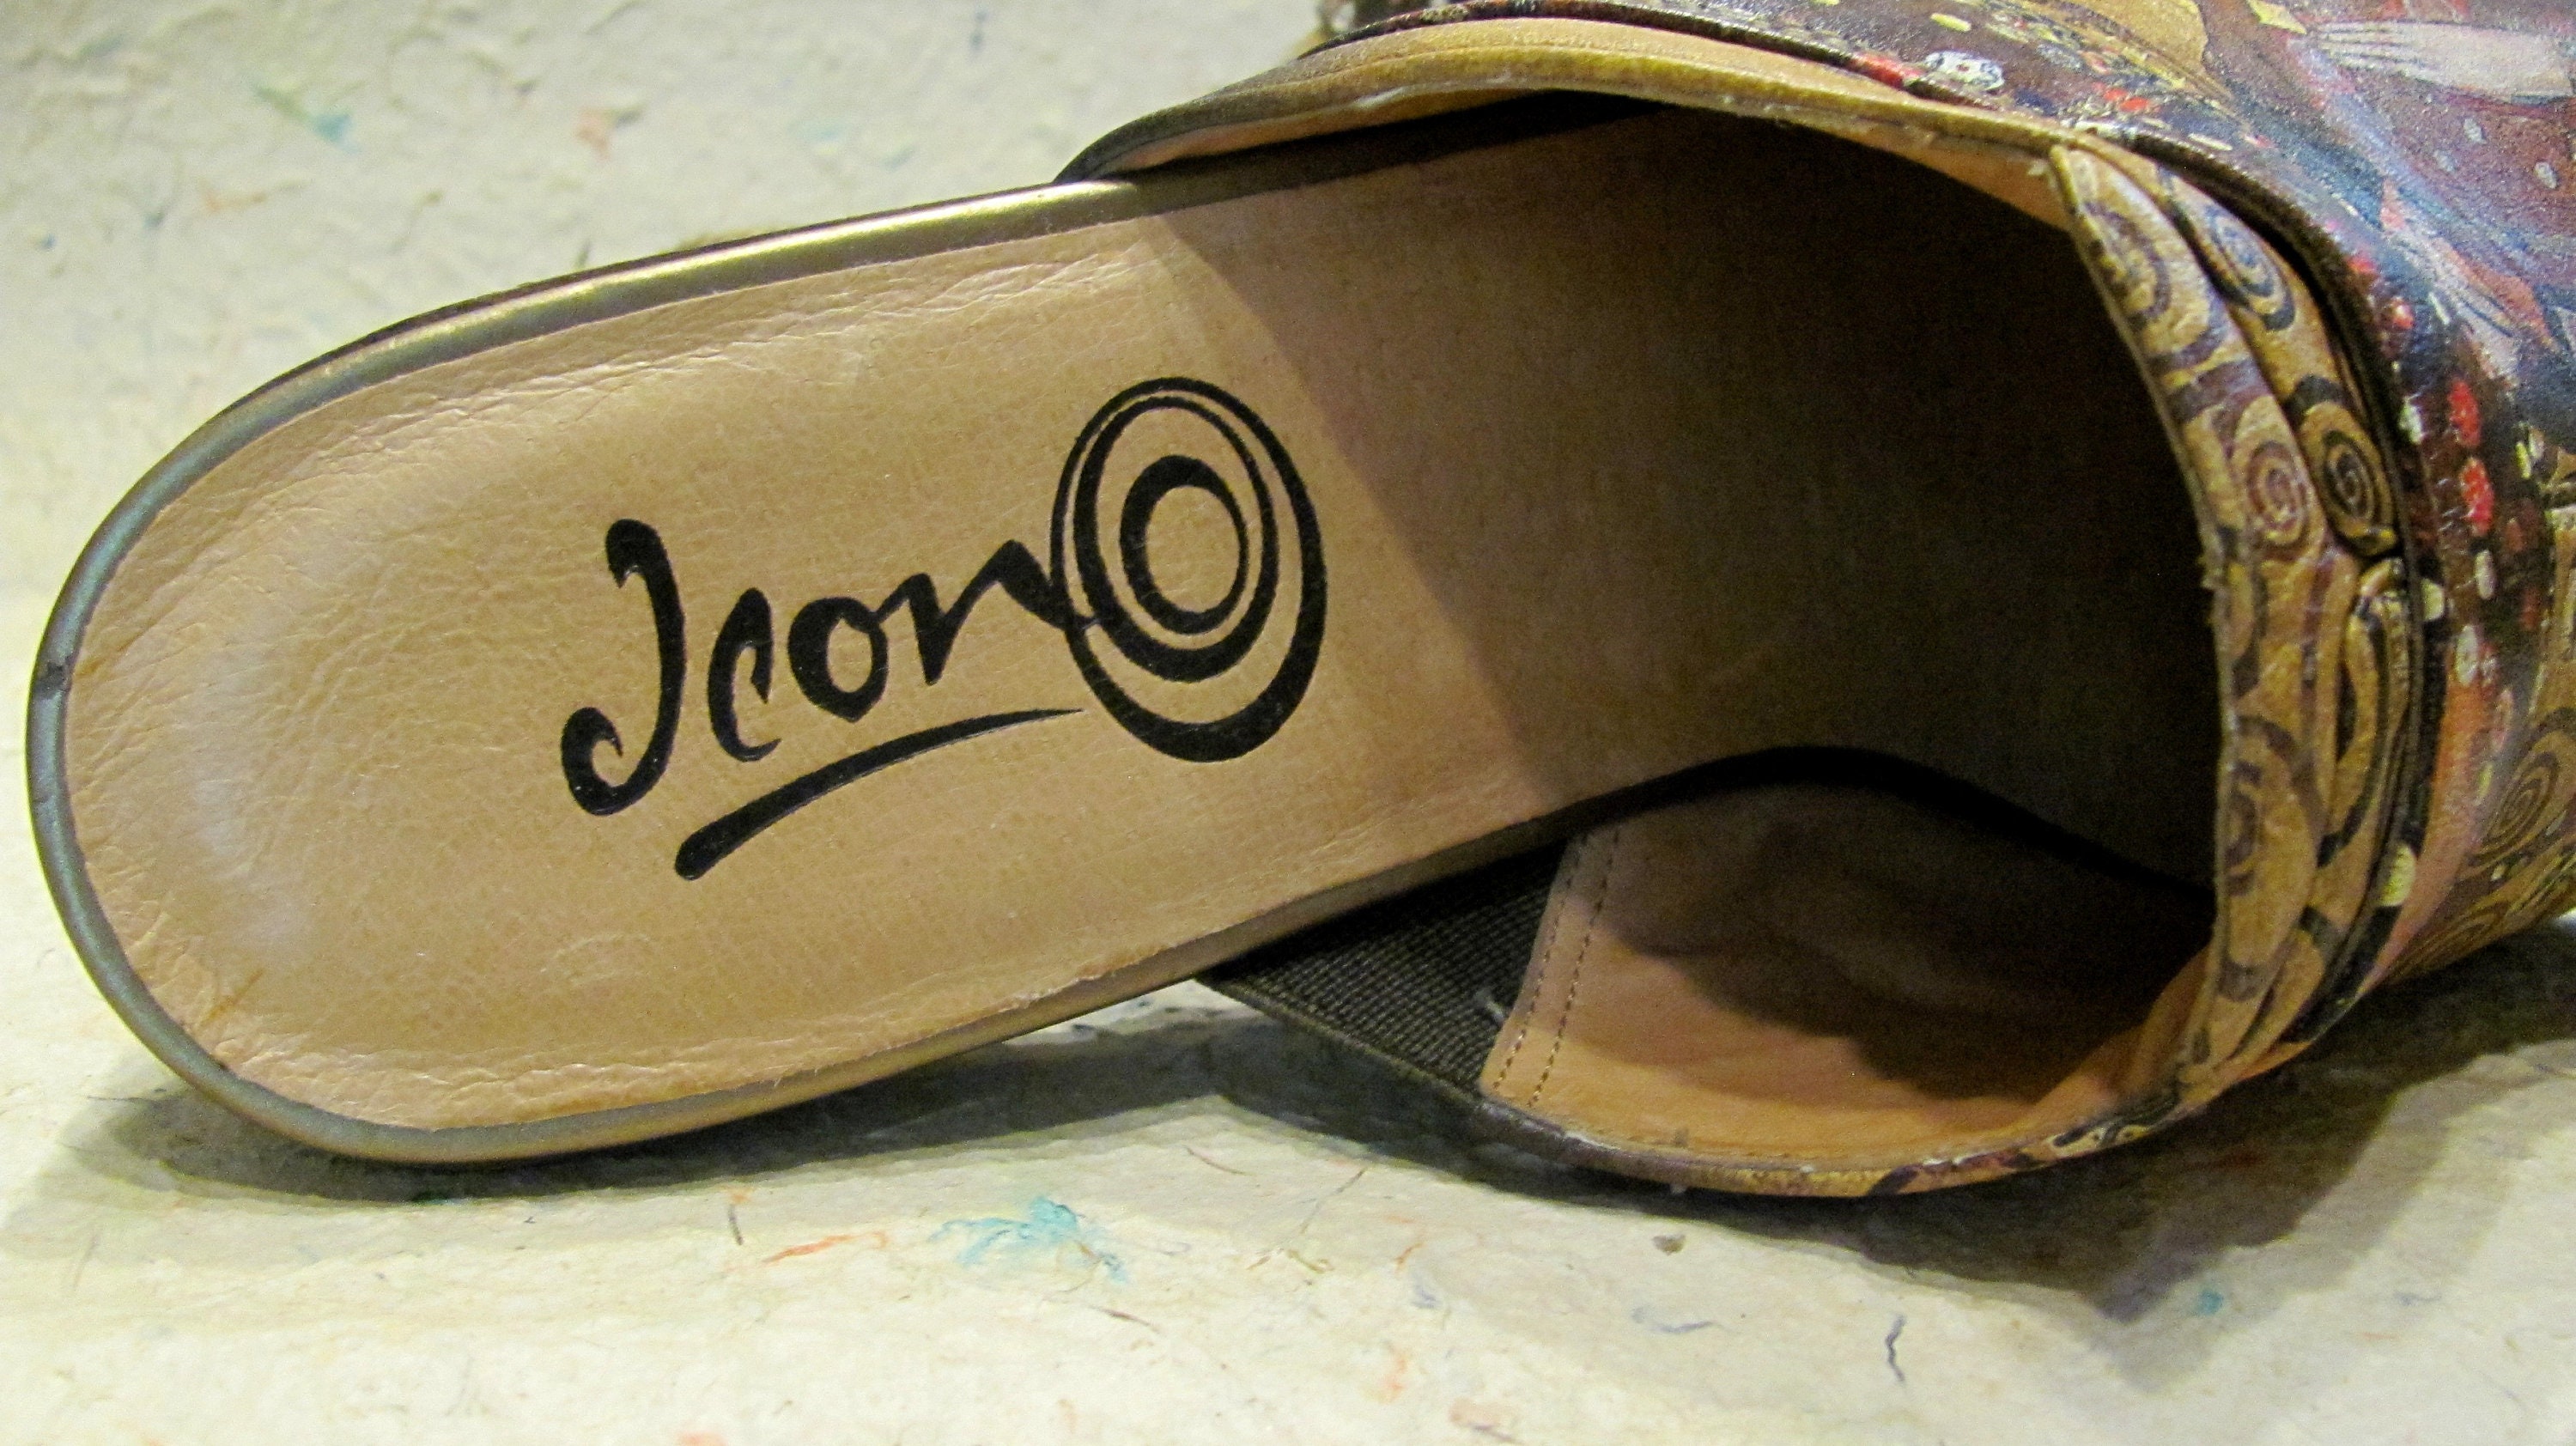 Schoenen damesschoenen Klompen & Muilen ICON Wearable Art Adaptation of Gustav Klimt's STOCLET FRIEZE Brussels Leather Open Back Flex High Heel Mules Shoes/ Size 7.5 